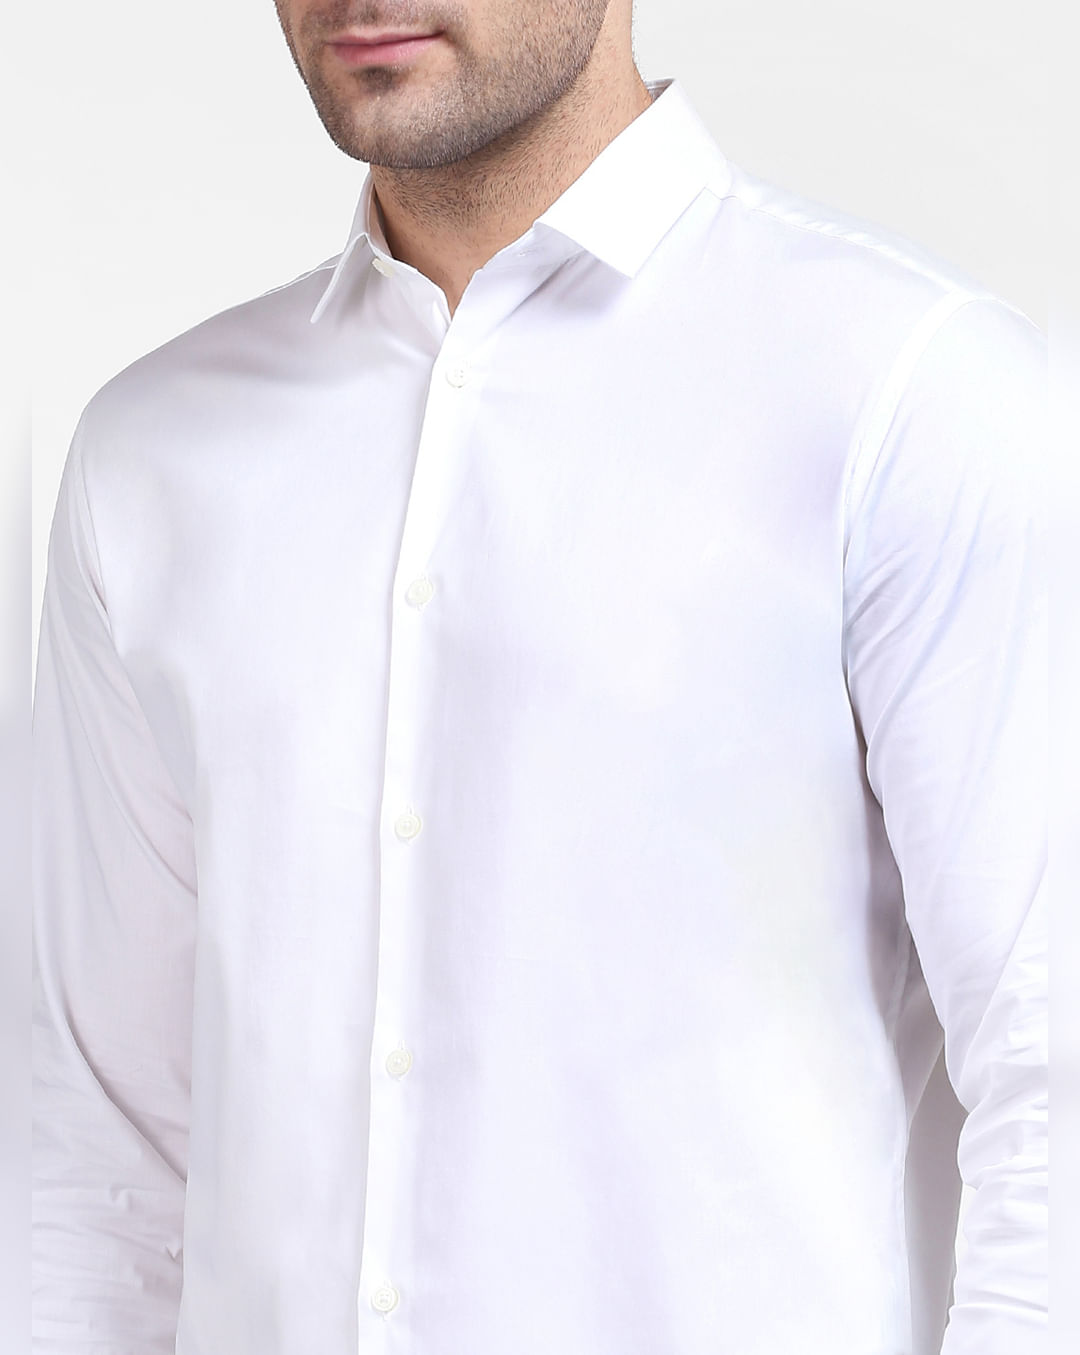 Buy White Shirt Full Formal | Men Online HOMME SELECTED Sleeves 200658602 at for